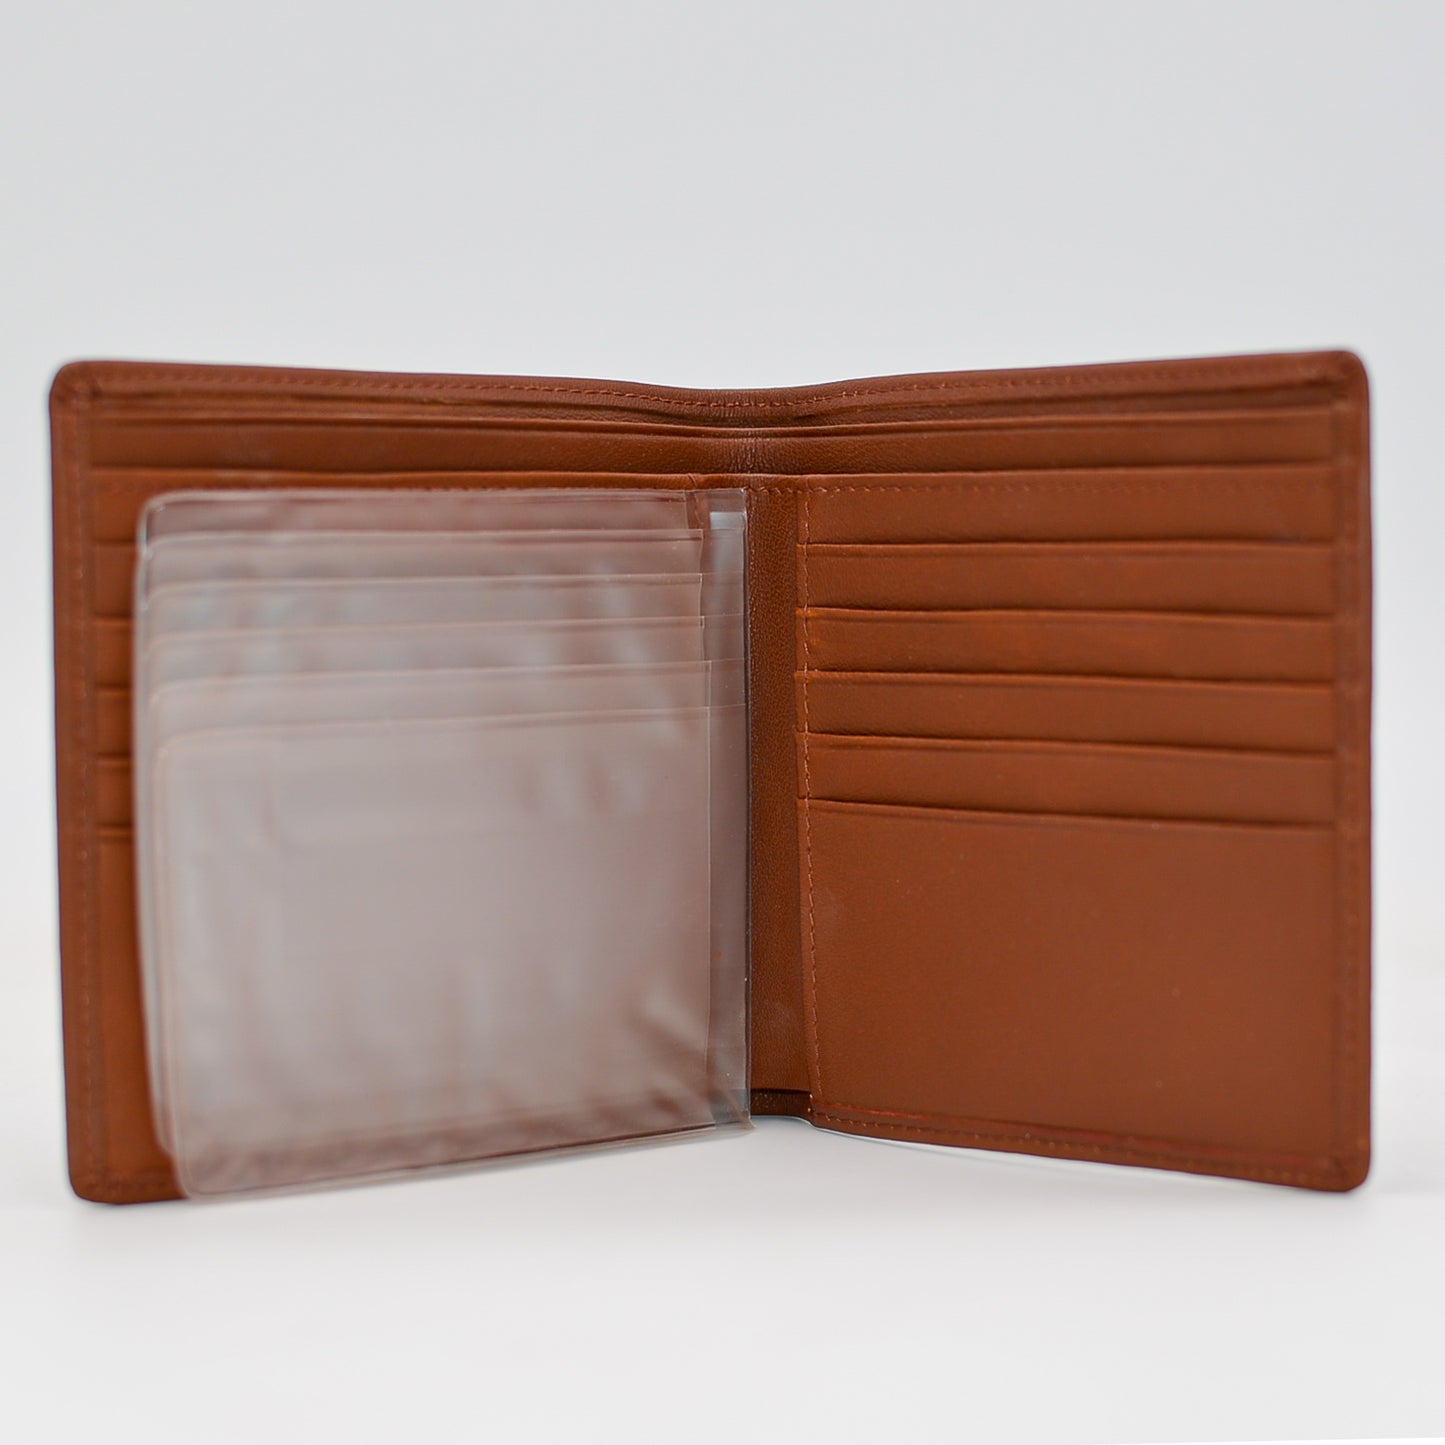 Leather: Desk Note / Index Card Holder